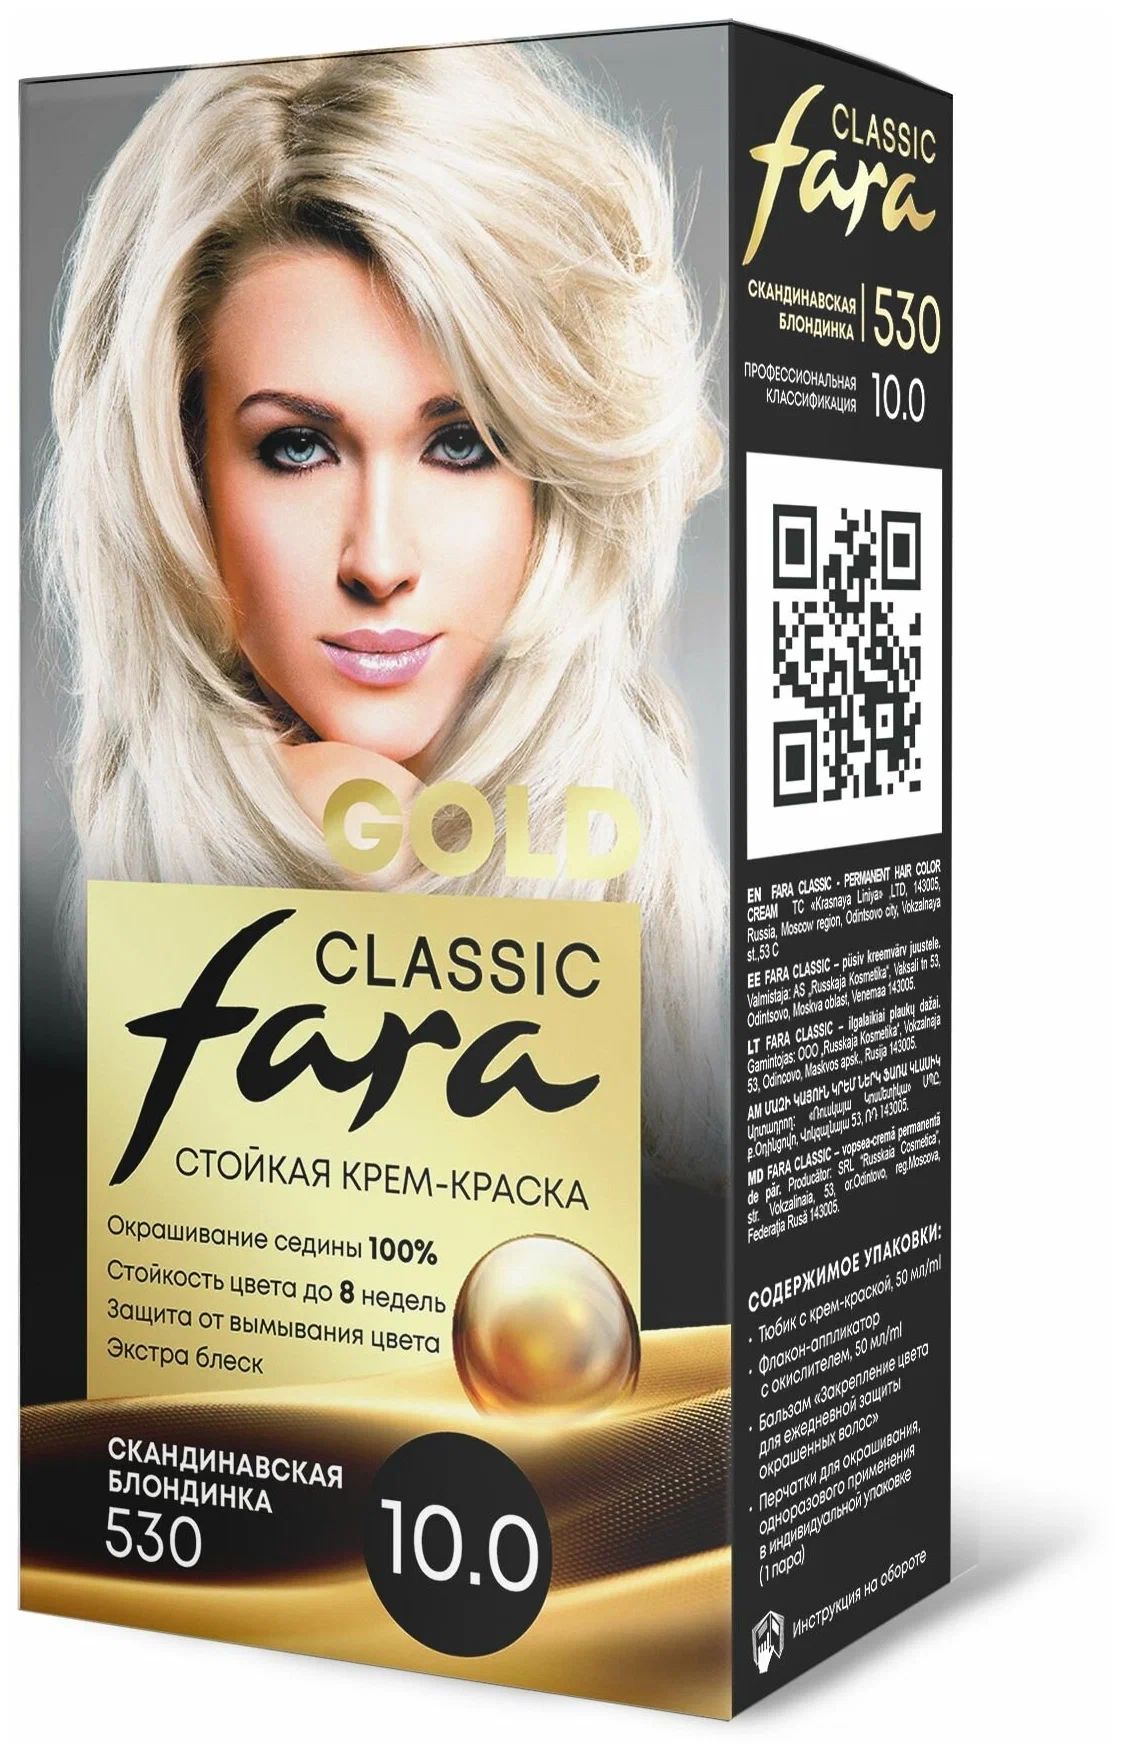 Крем-краска для волос Fara Classic Gold 530 скандинавская блондинка 10.0, 140 г русская голгофа политические репрессии в югре